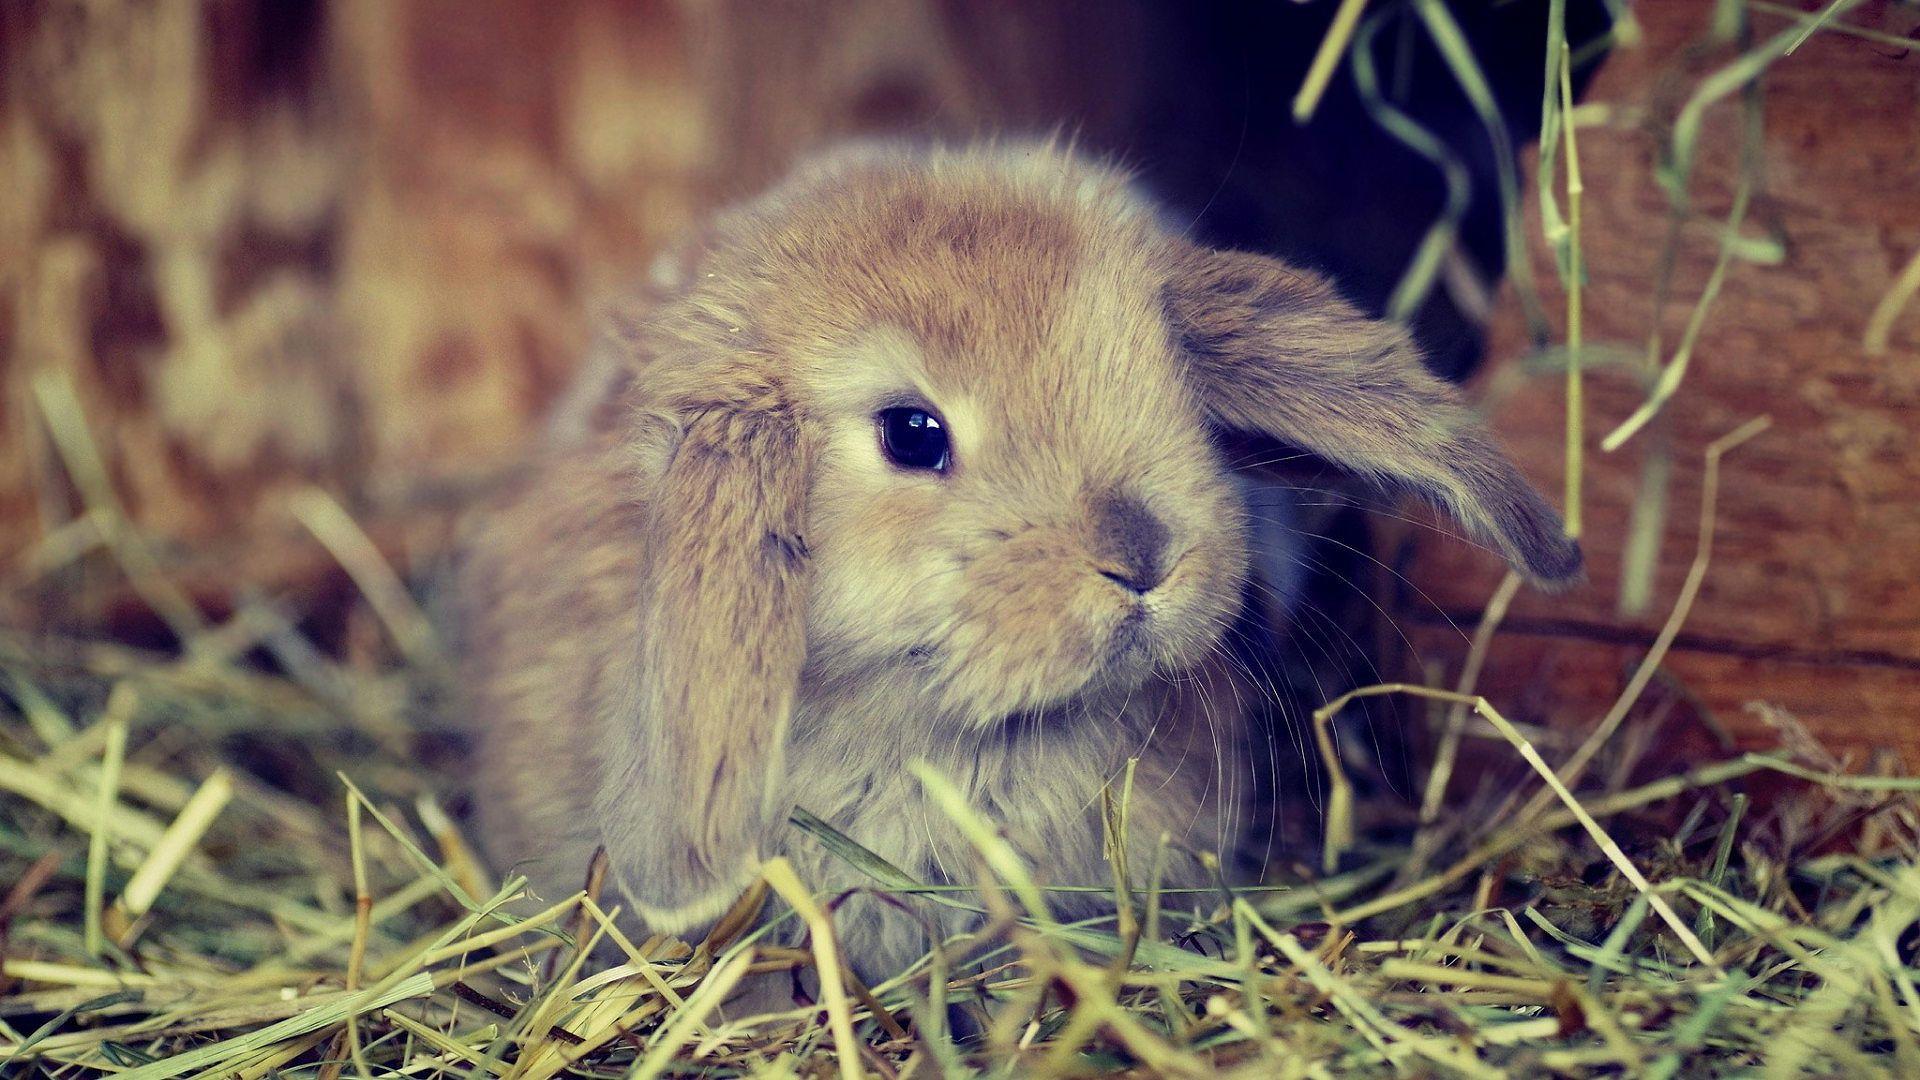 Cute fluffy bunny Wallpaper. Bunny wallpaper, Animals